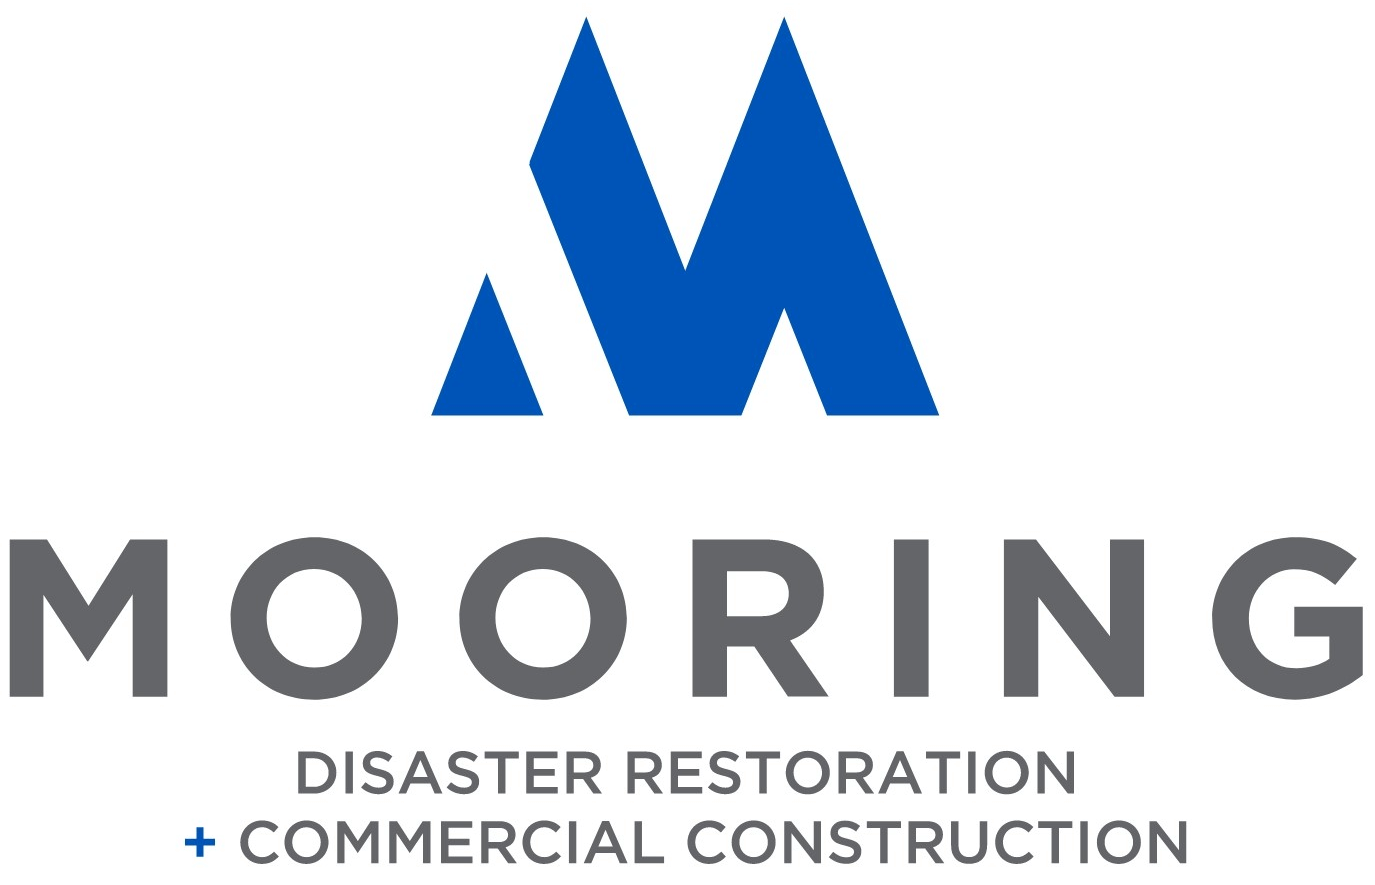 Mooring Disaster Restoration + Commercial Construction